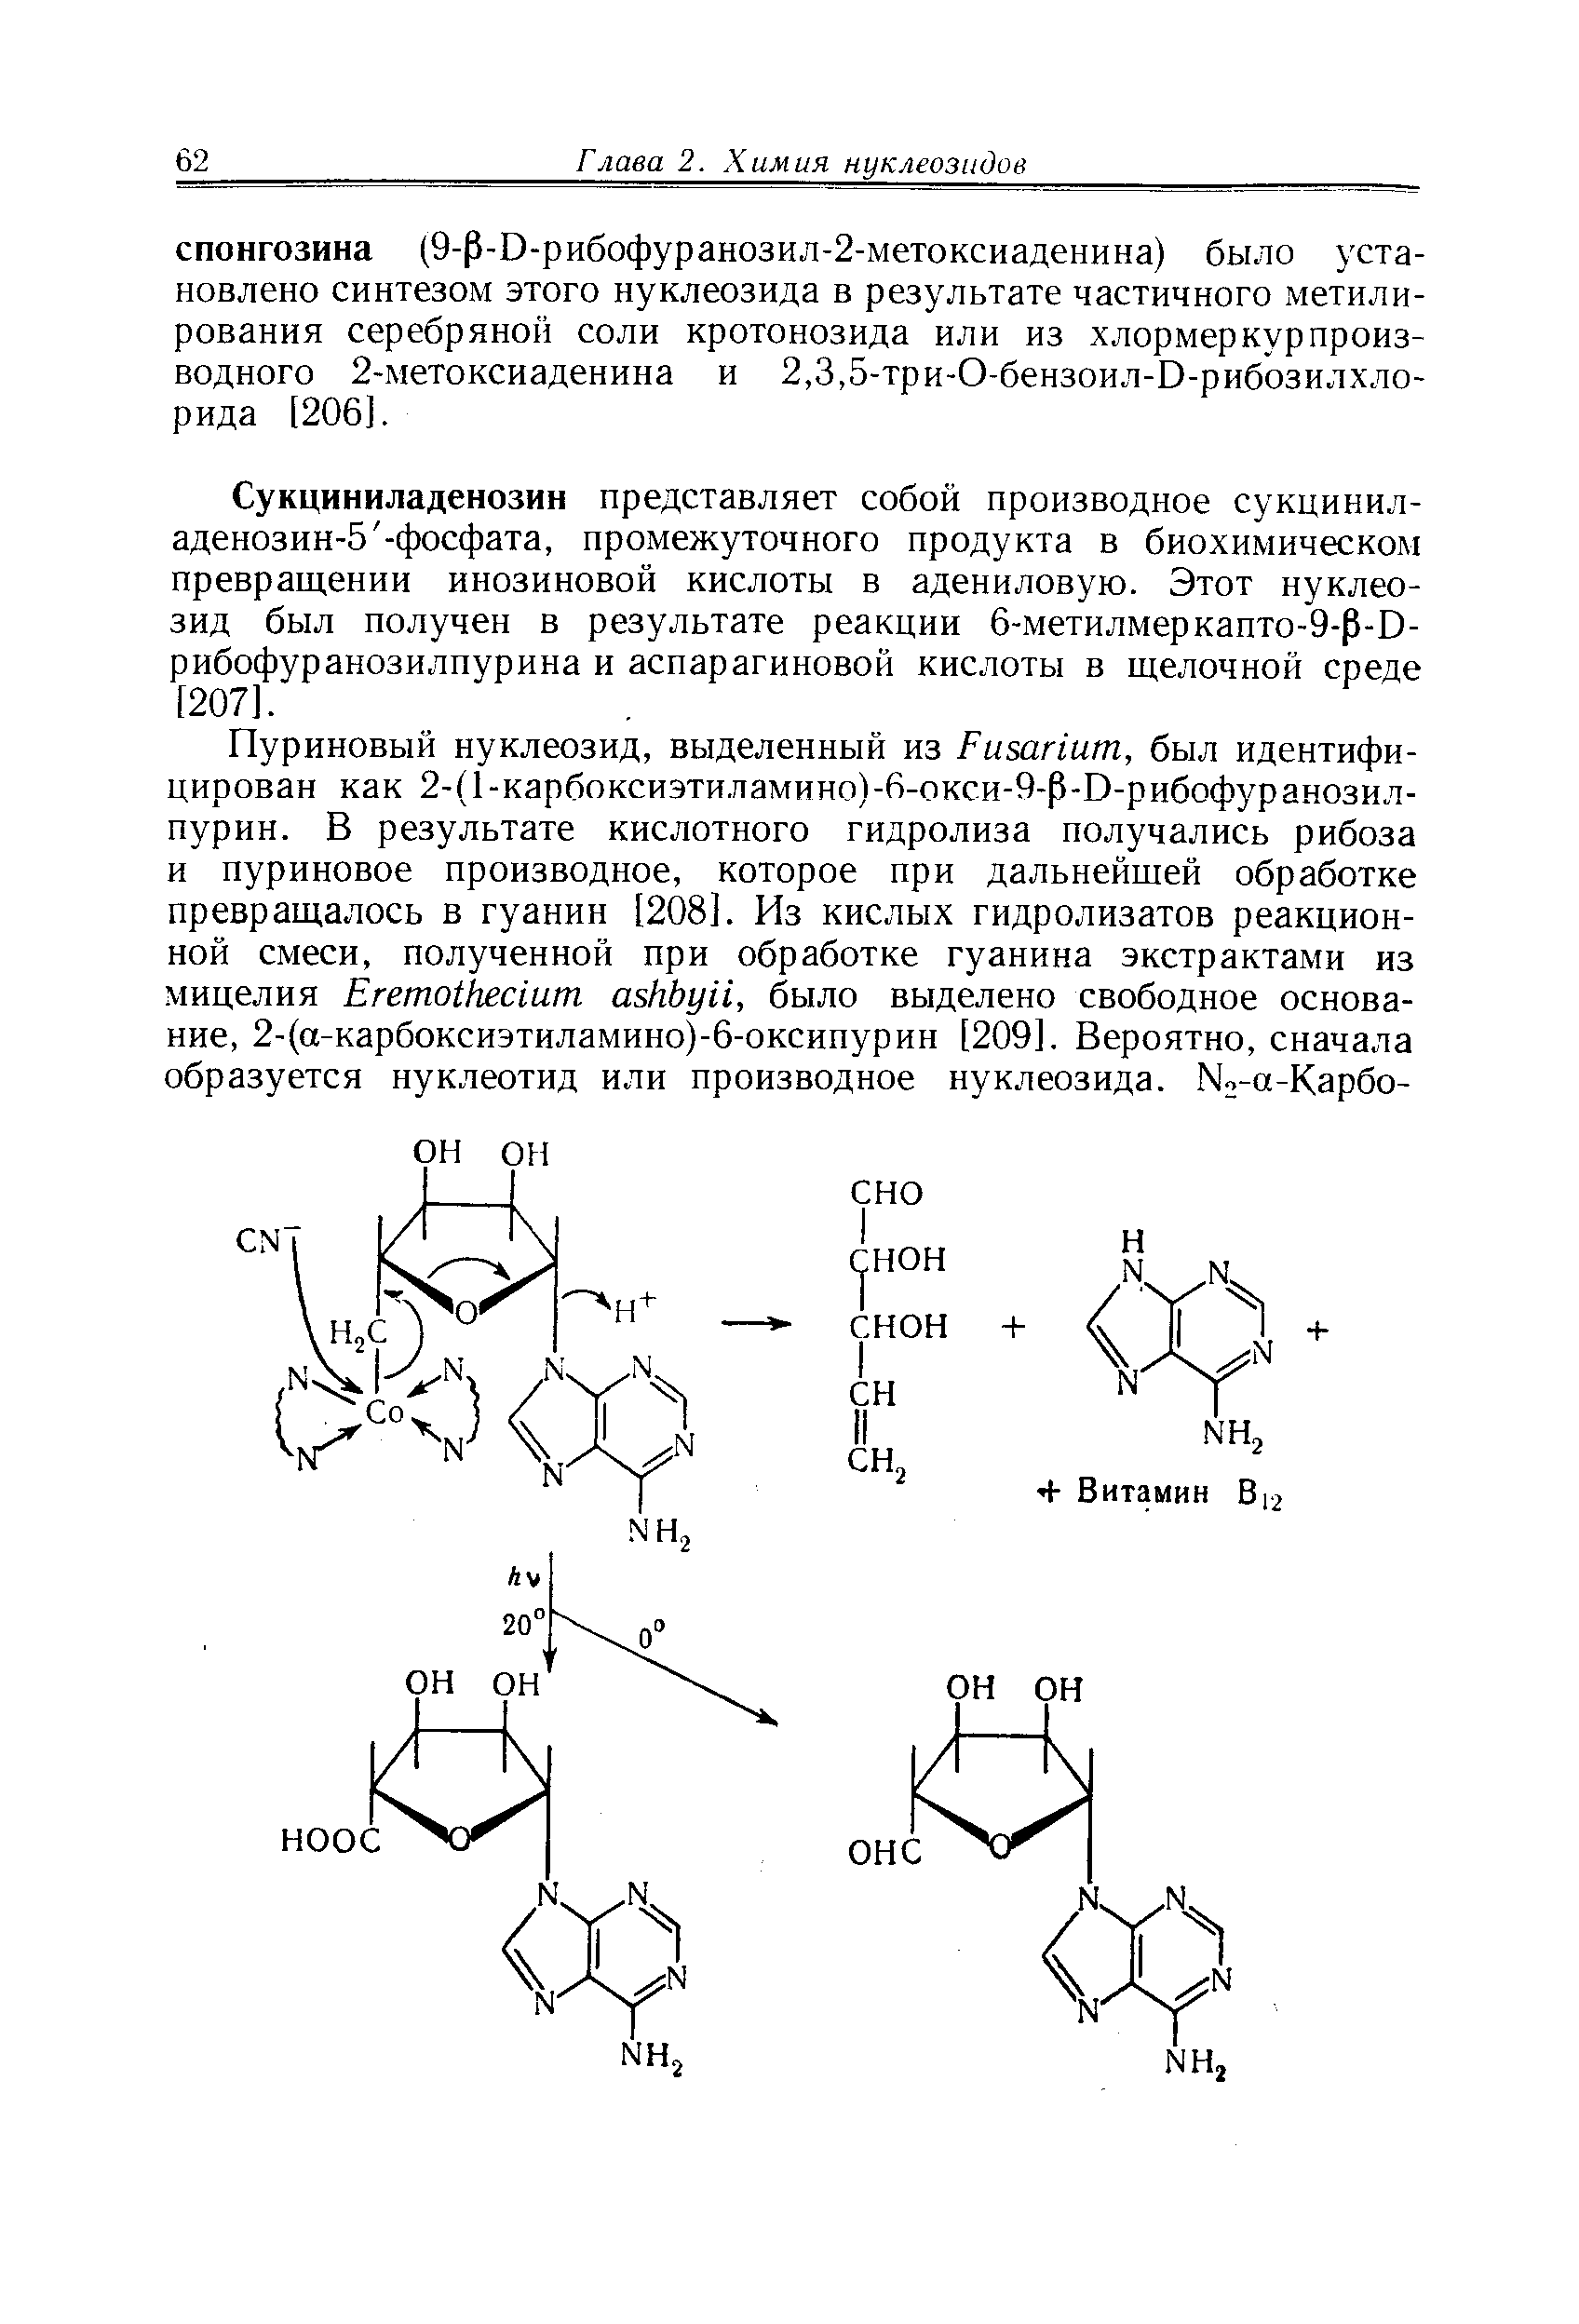 Сукциниладенозин представляет собой производное сукцинил-аденозин-5 -фосфата, промежуточного продукта в биохимическом превращении инозиновой кислоты в адениловую. Этот нуклеозид был получен в результате реакции б-метилмеркапто-9- -D-рибофуранозилпурина и аспарагиновой кислоты в щелочной среде [207].